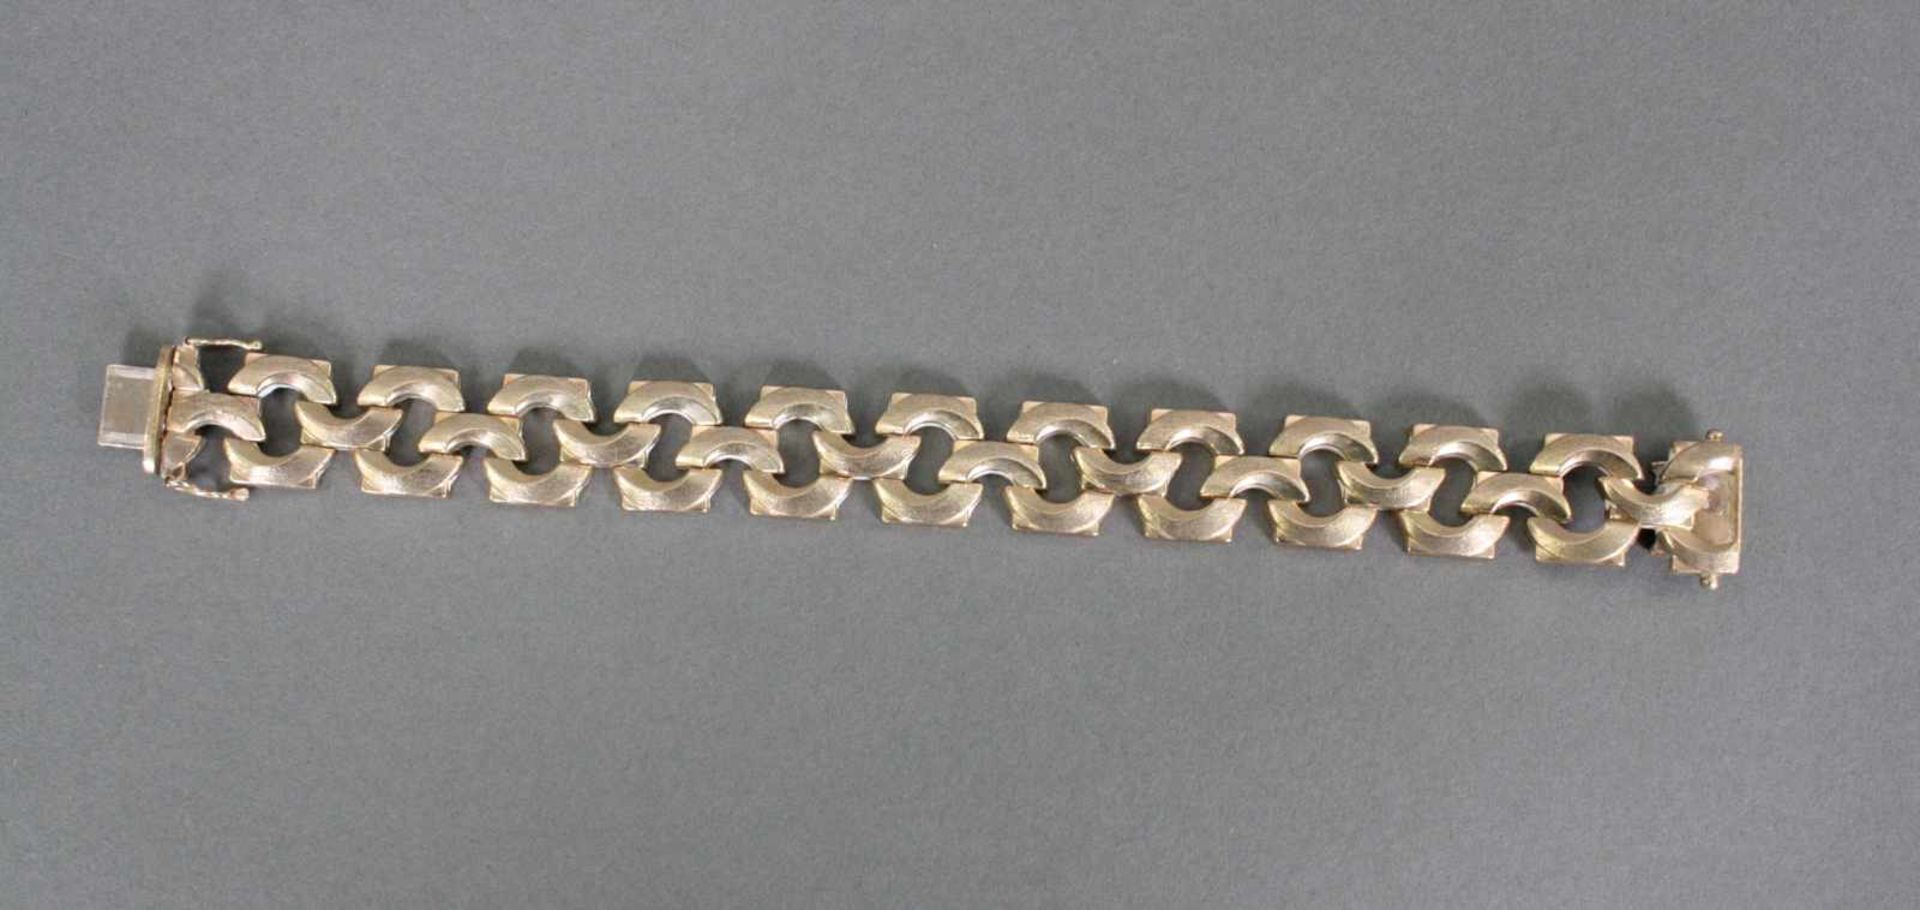 Damenarmband, 8 Karat GelbgoldGliederarmband, am Verschluss punziert 333, ca. Länge 19,5 cm, 25,4